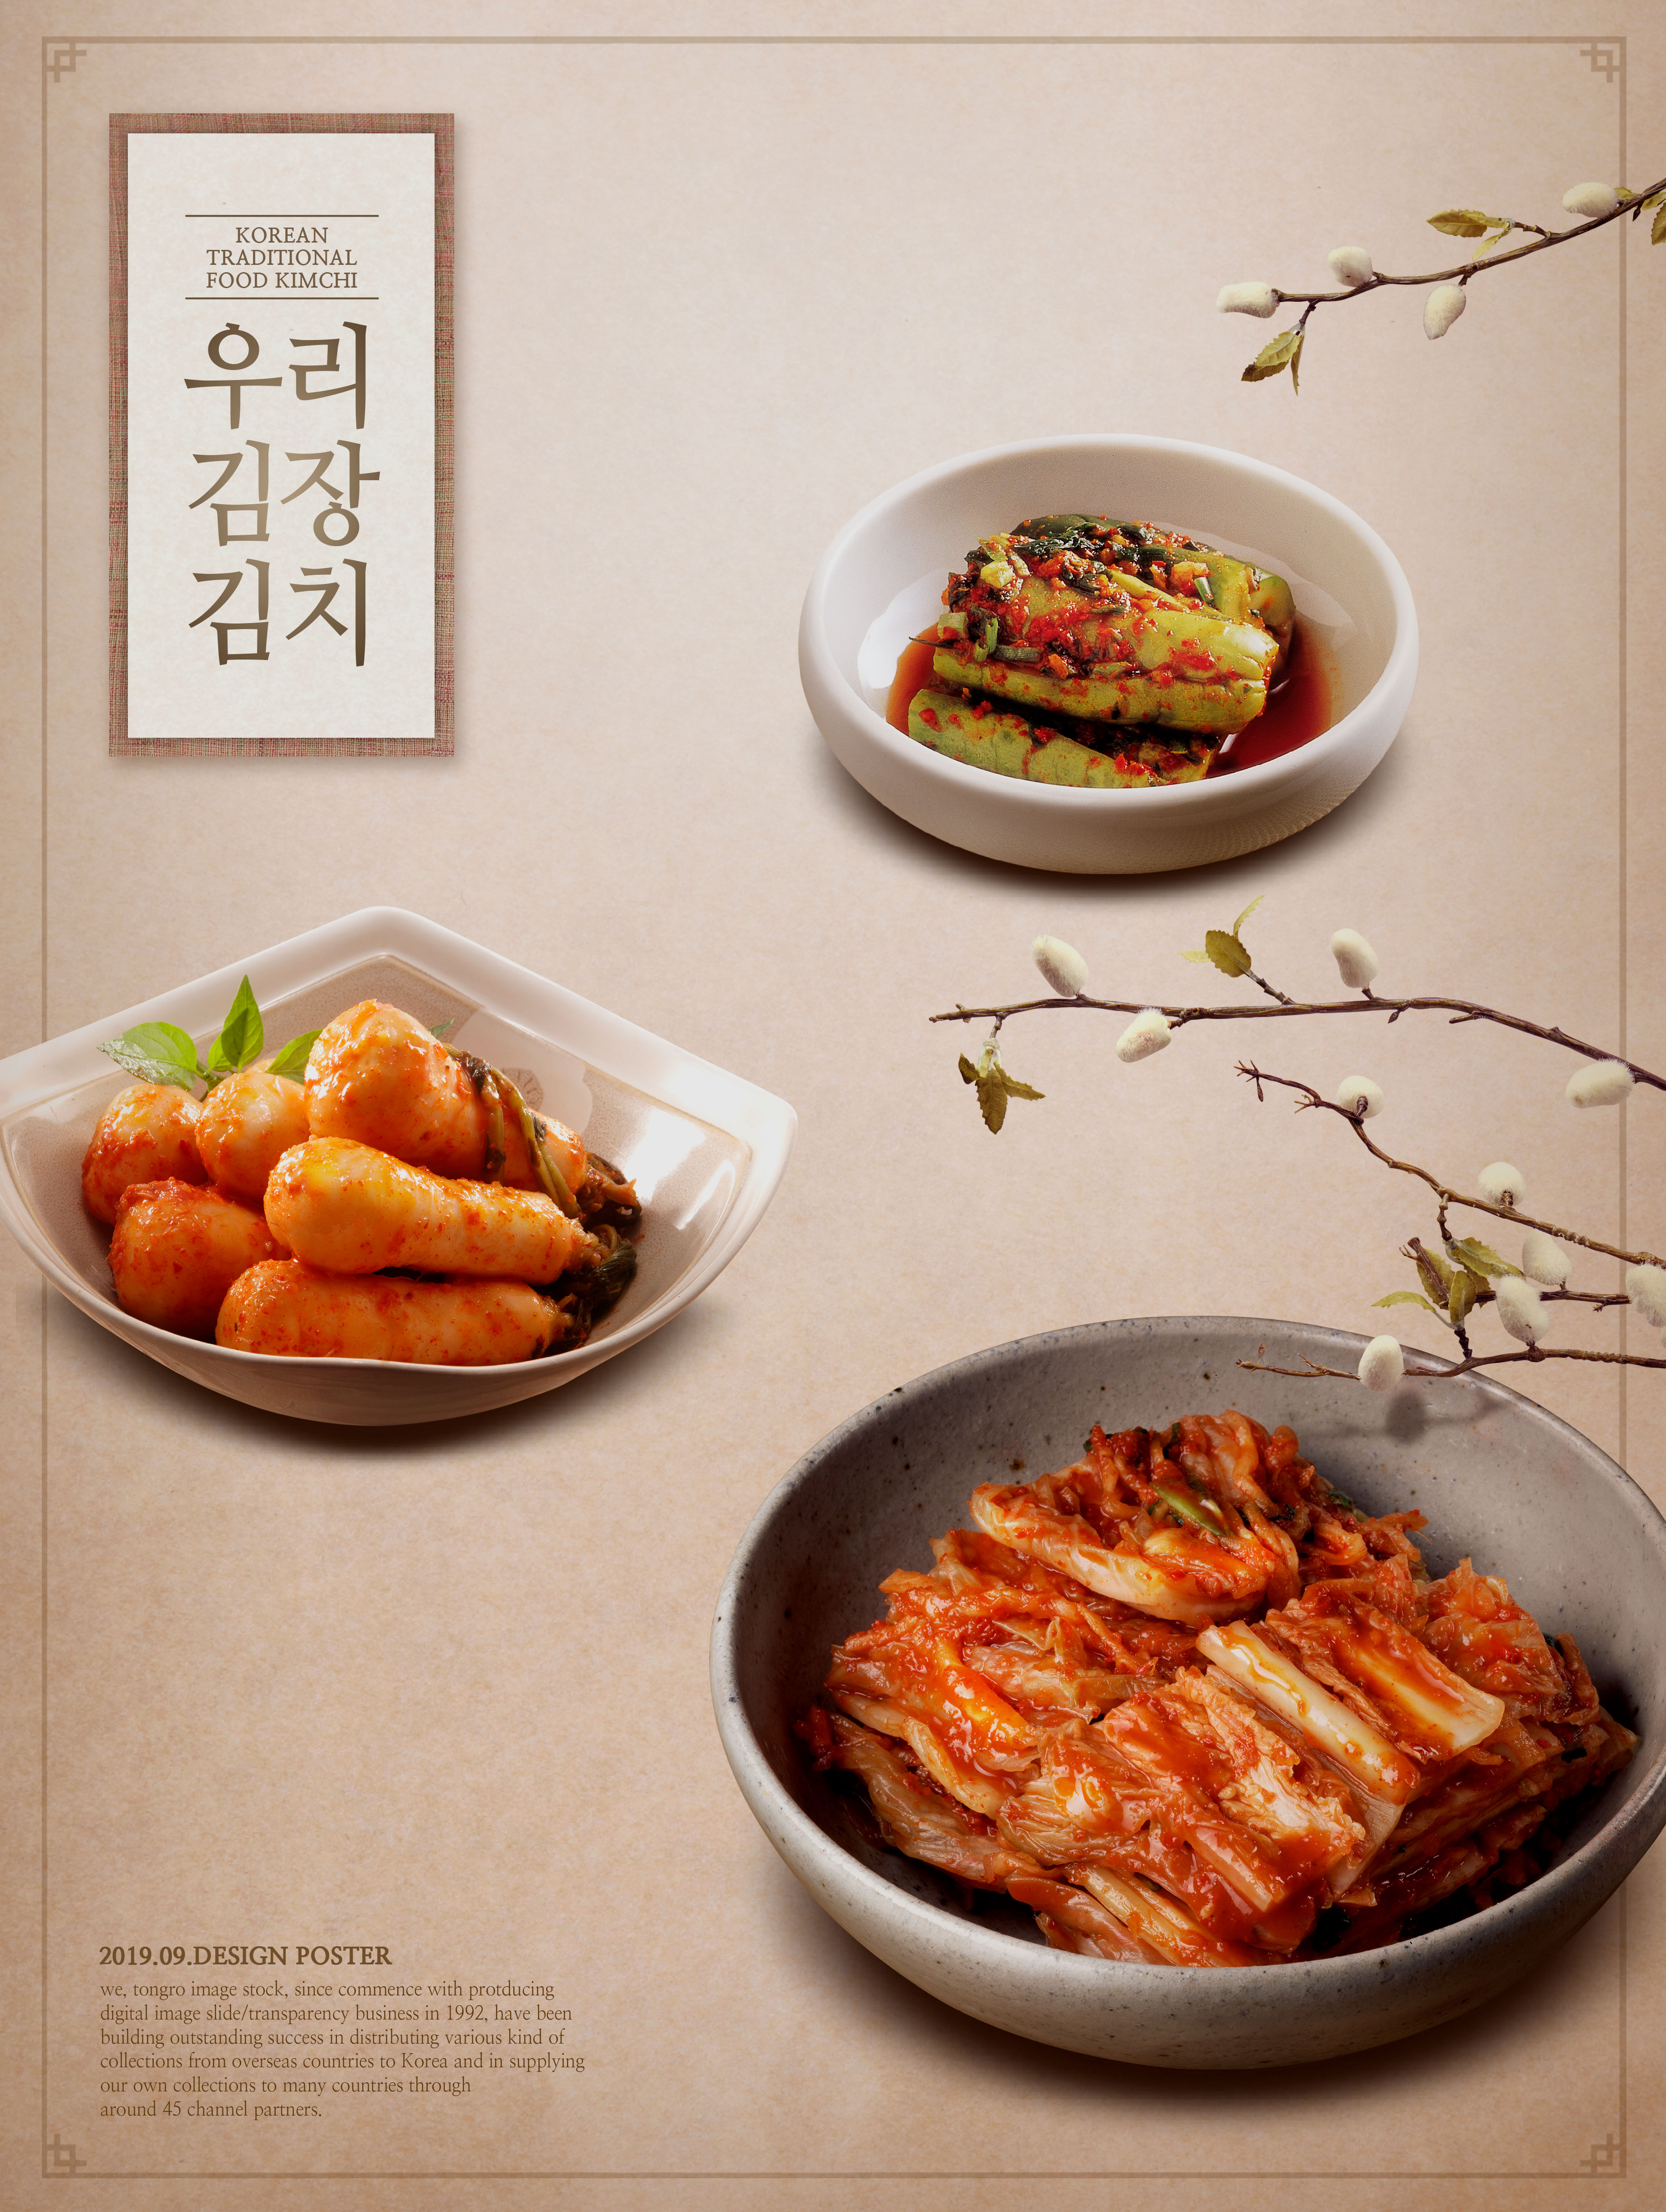 韩国传统特色食品泡菜广告海报psd模板插图(6)